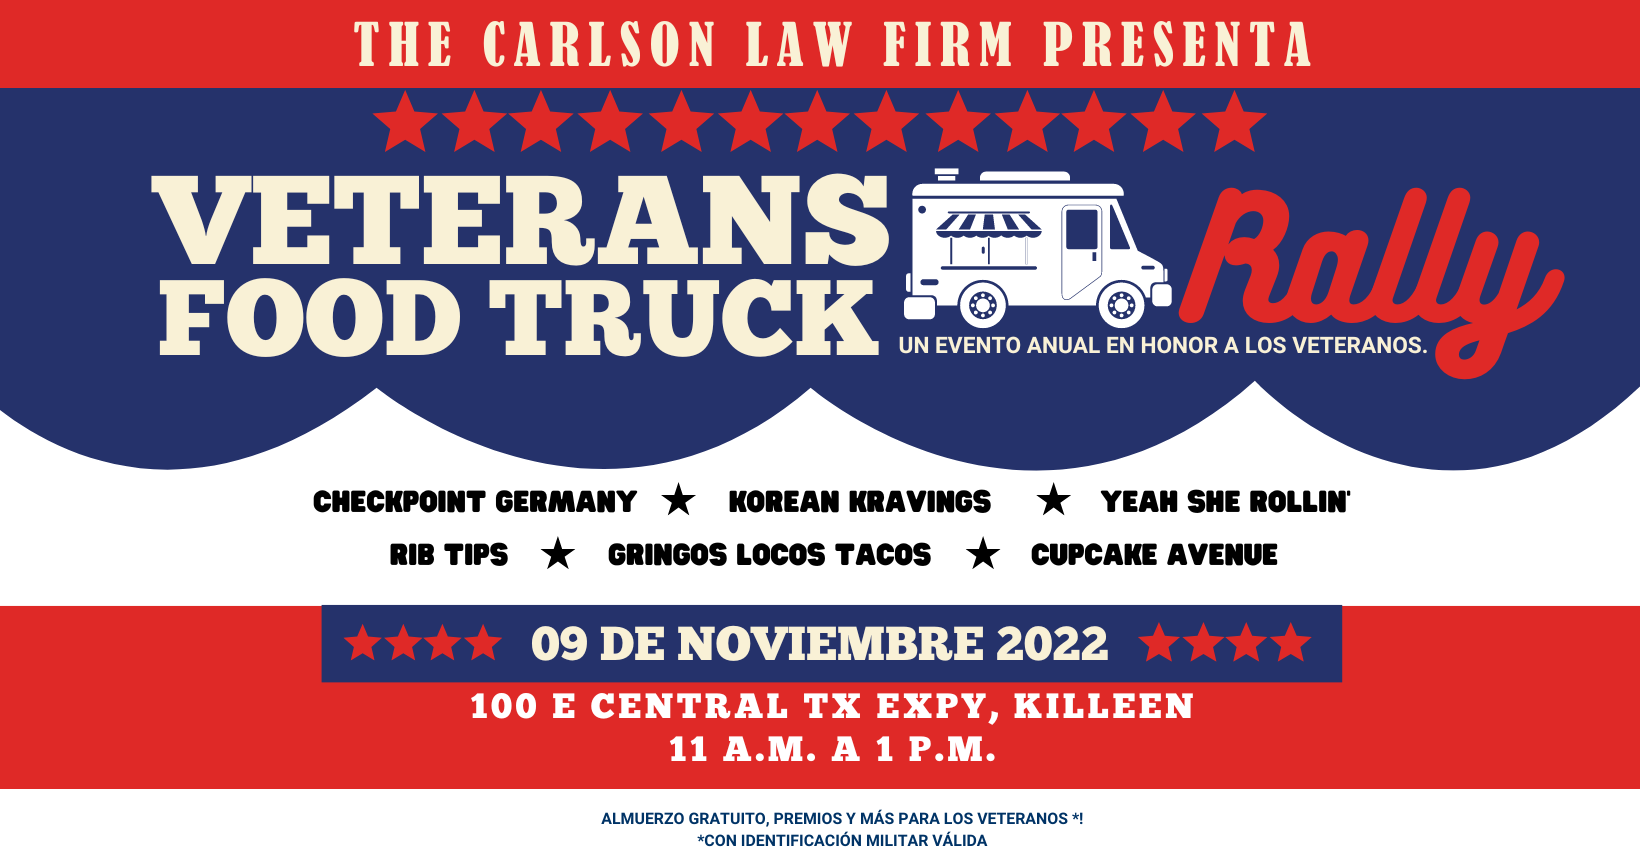 Veteranos con una identificación válida pueden venir a The Carlson Law Firm en Killeen para disfrutar de un almuerzo gratis el 9 de noviembre.